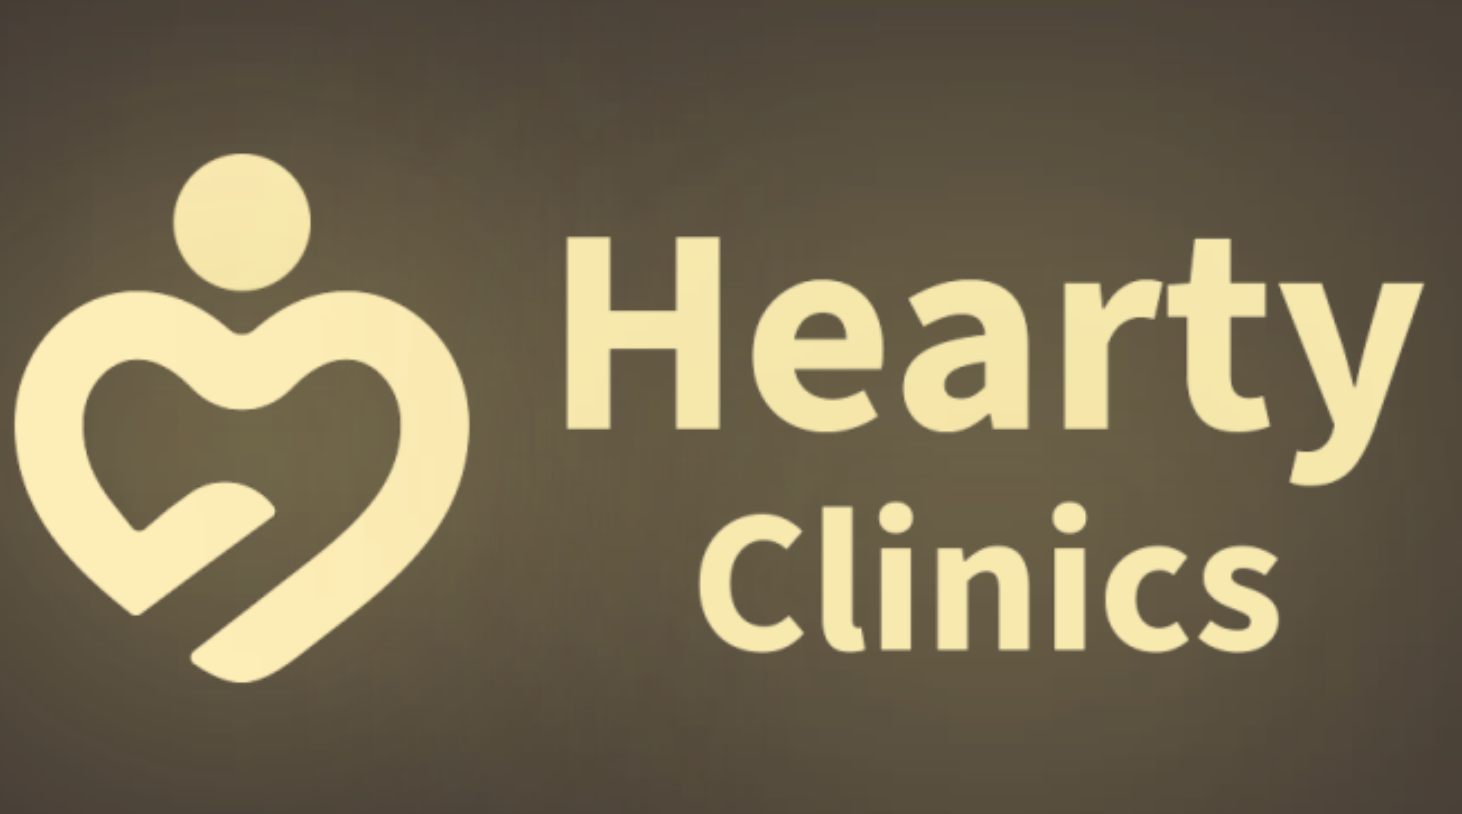 Hearty Clinics